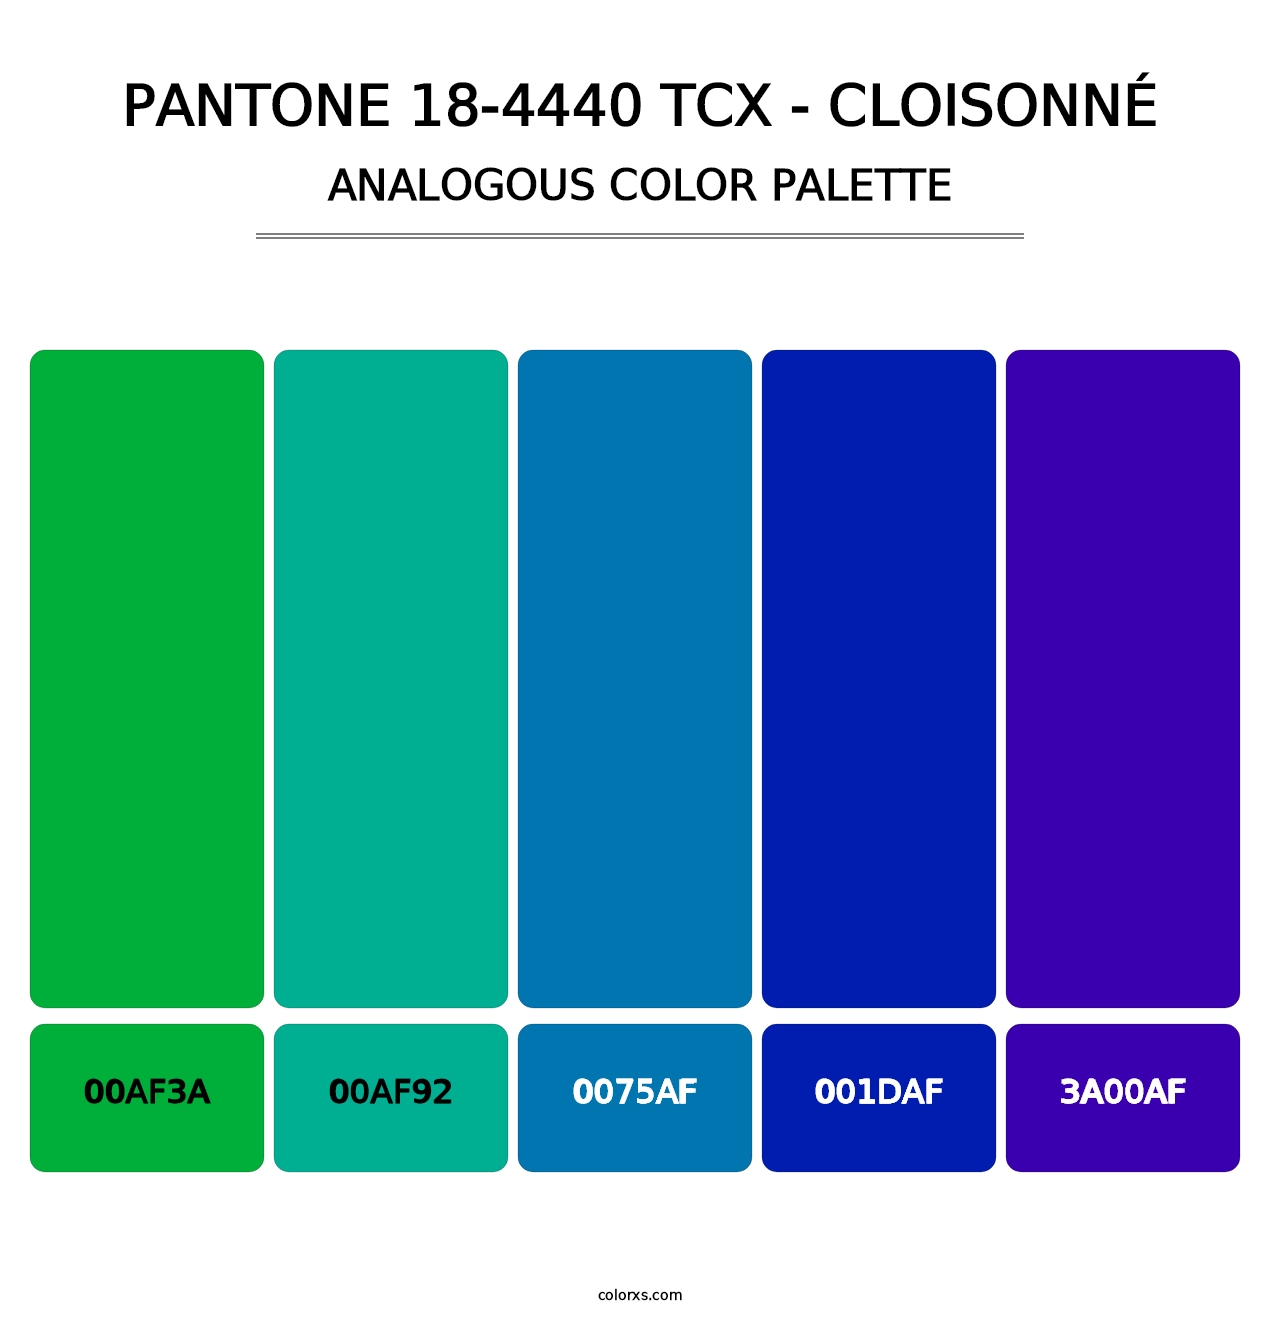 PANTONE 18-4440 TCX - Cloisonné - Analogous Color Palette